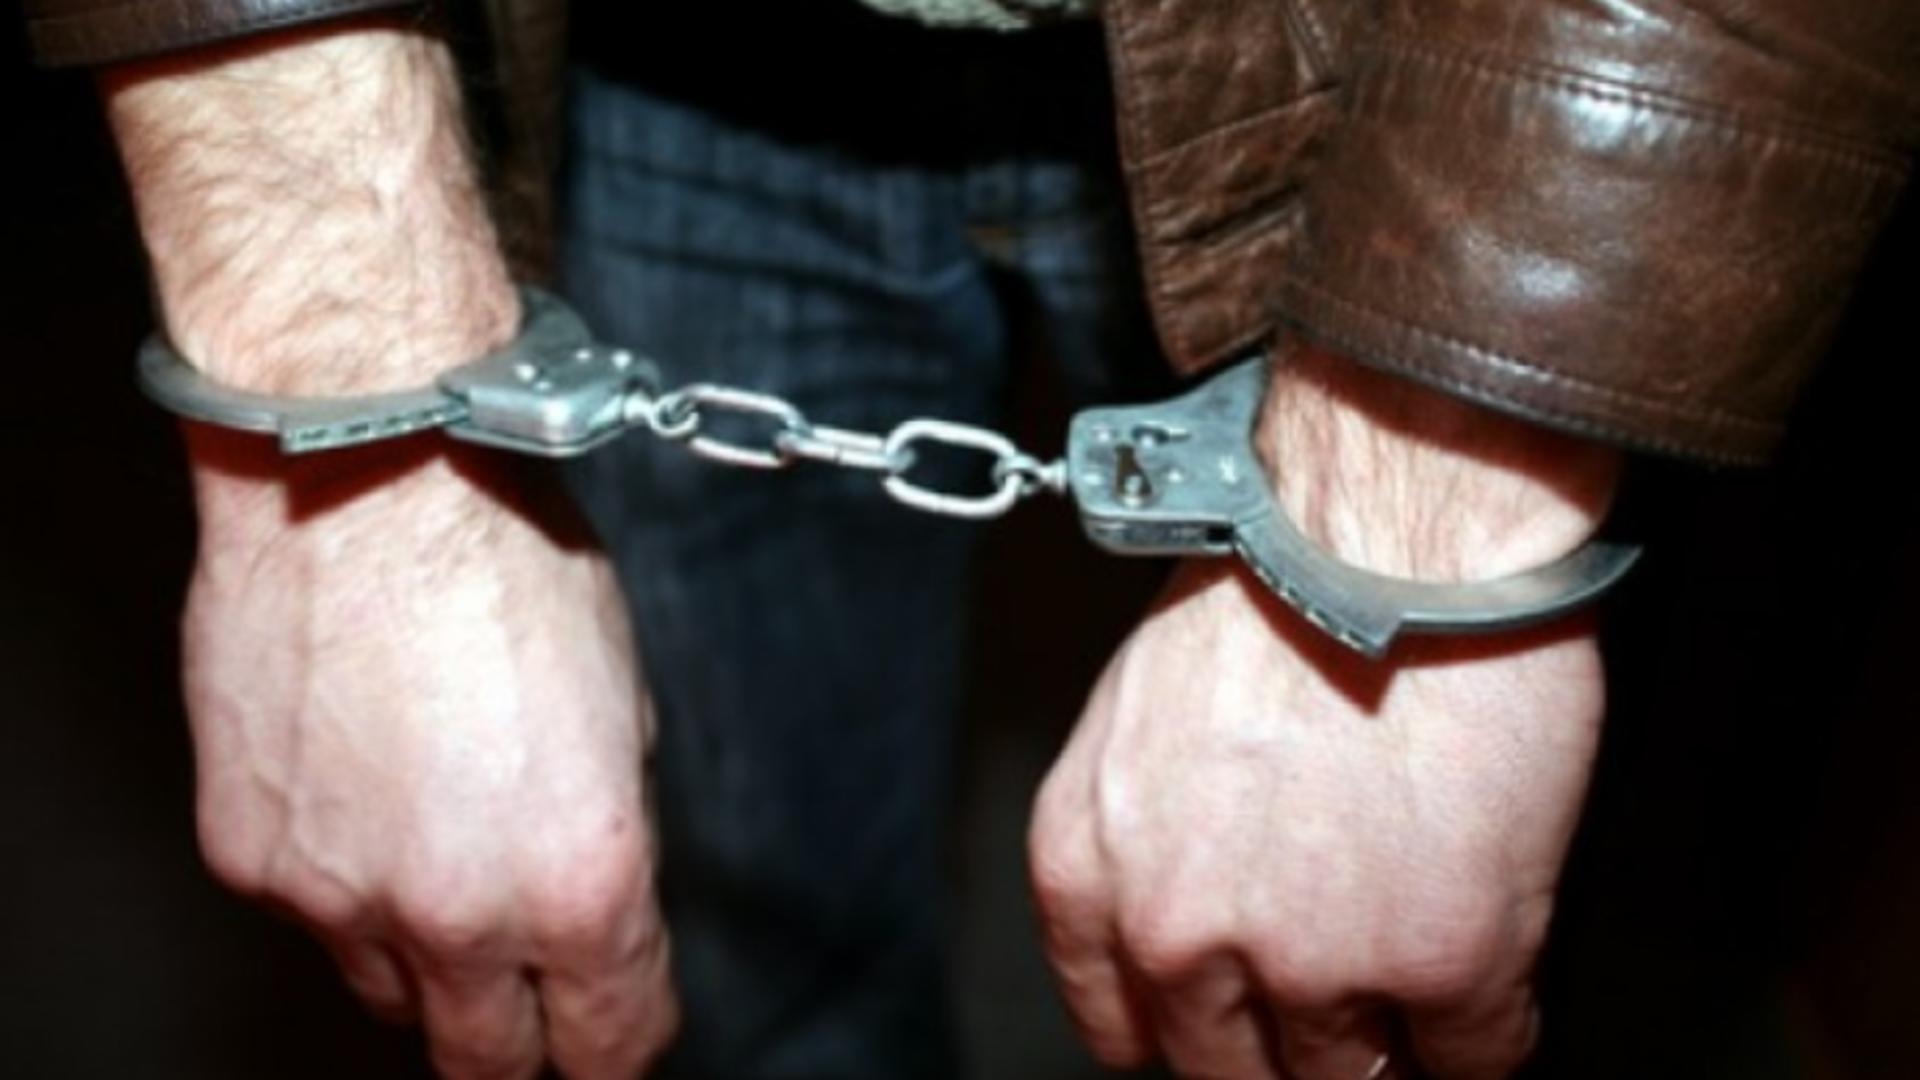 Un bărbat a fost arestat preventiv pentru agresiune sexuală, după ce a pipăit o fată de 9 ani într-un microbuz